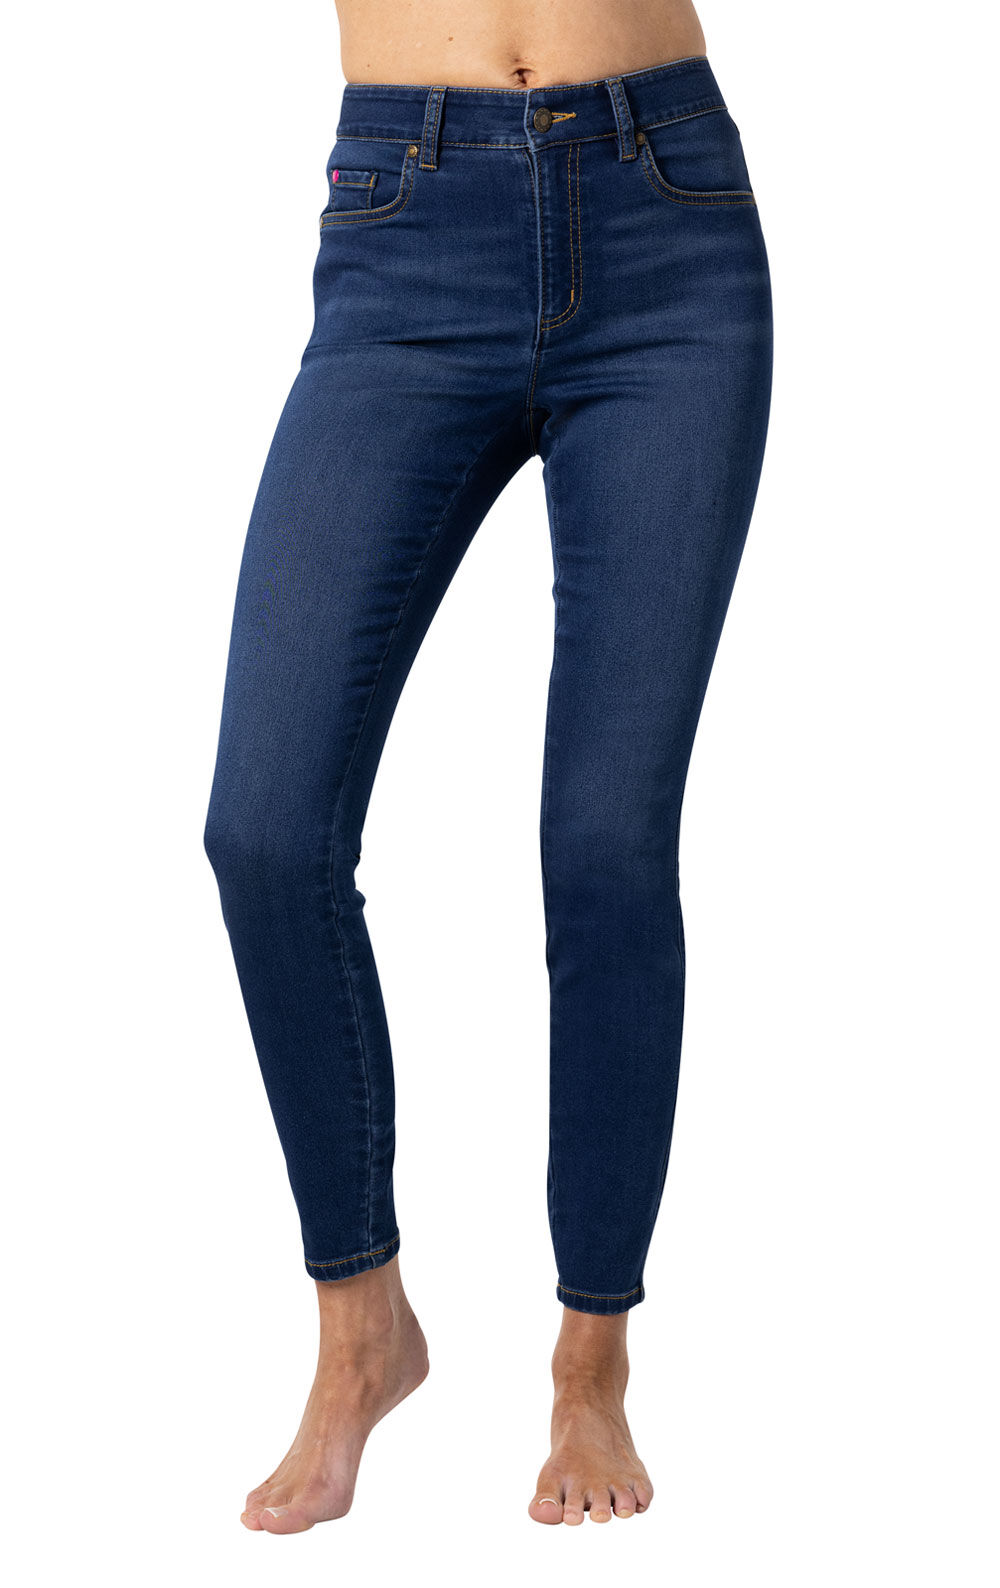 Buy Girls Blue Skinny Fit Jeans Online - 777225 | Allen Solly